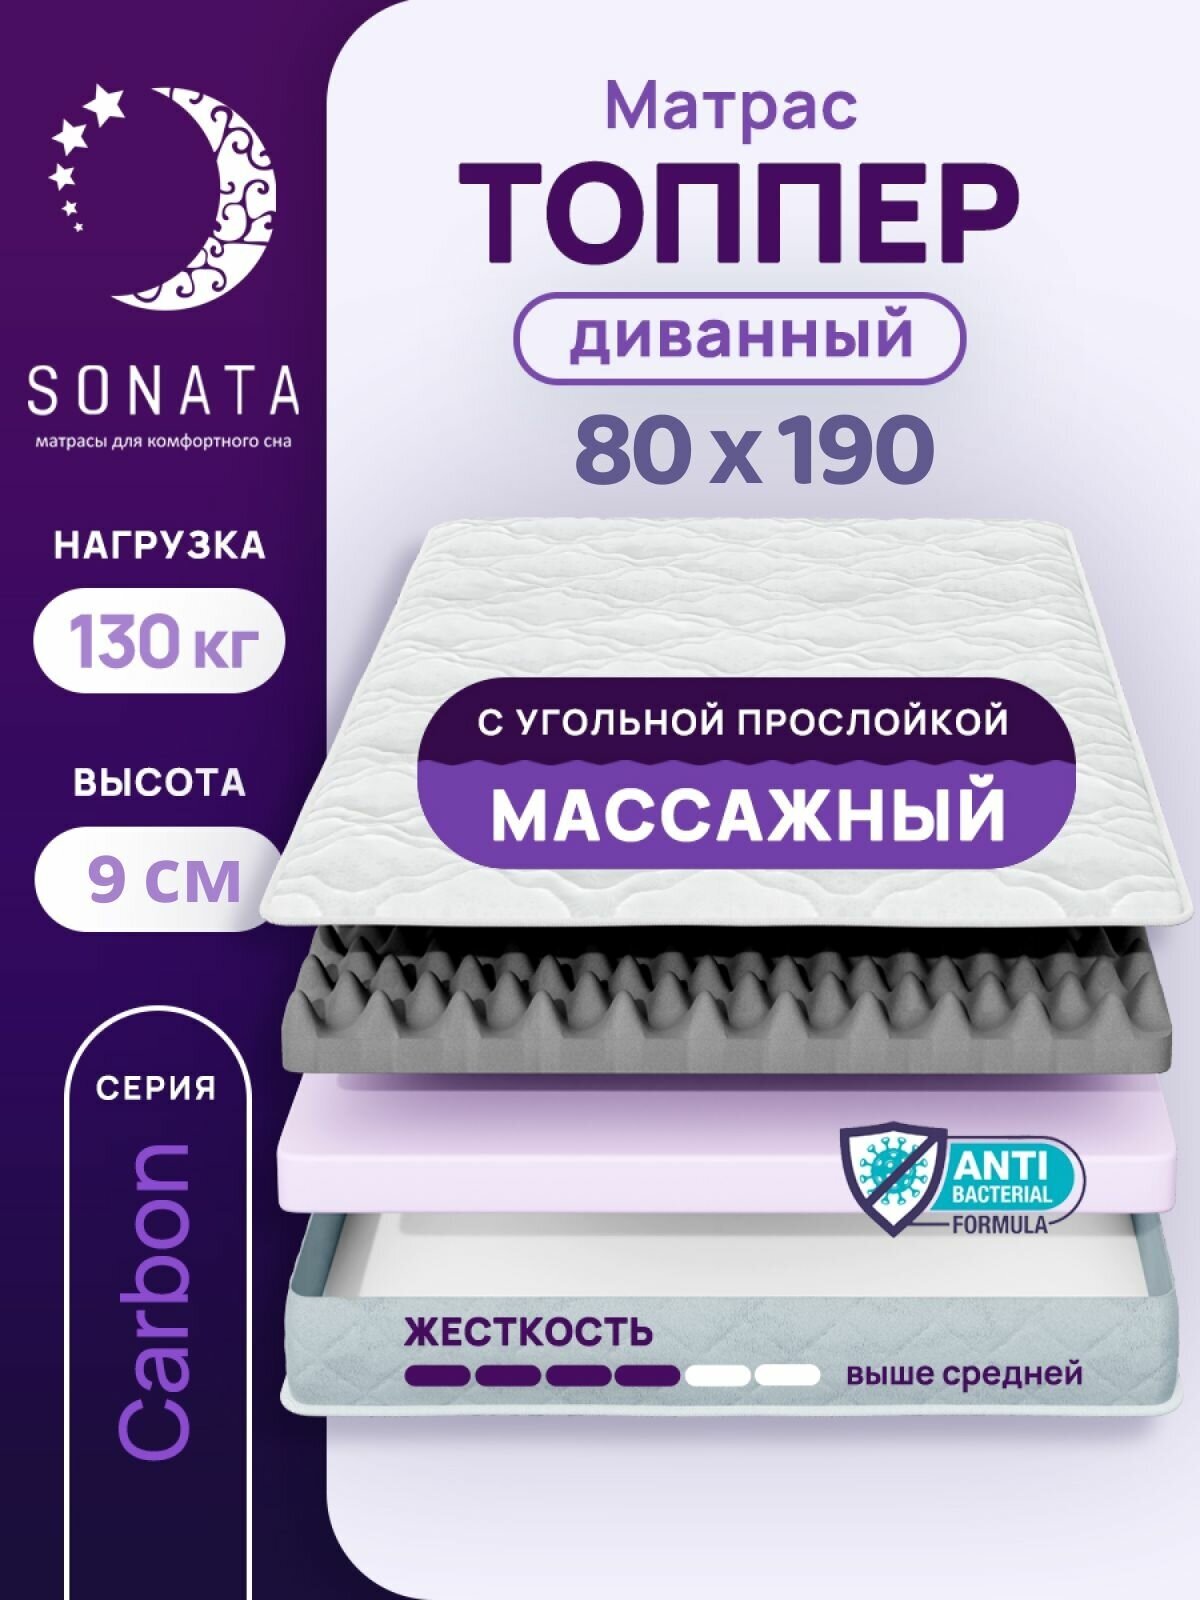 Топпер матрас 80х190 см SONATA, ортопедический, беспружинный, односпальный, тонкий матрац для дивана, кровати, высота 9 см с массажным эффектом